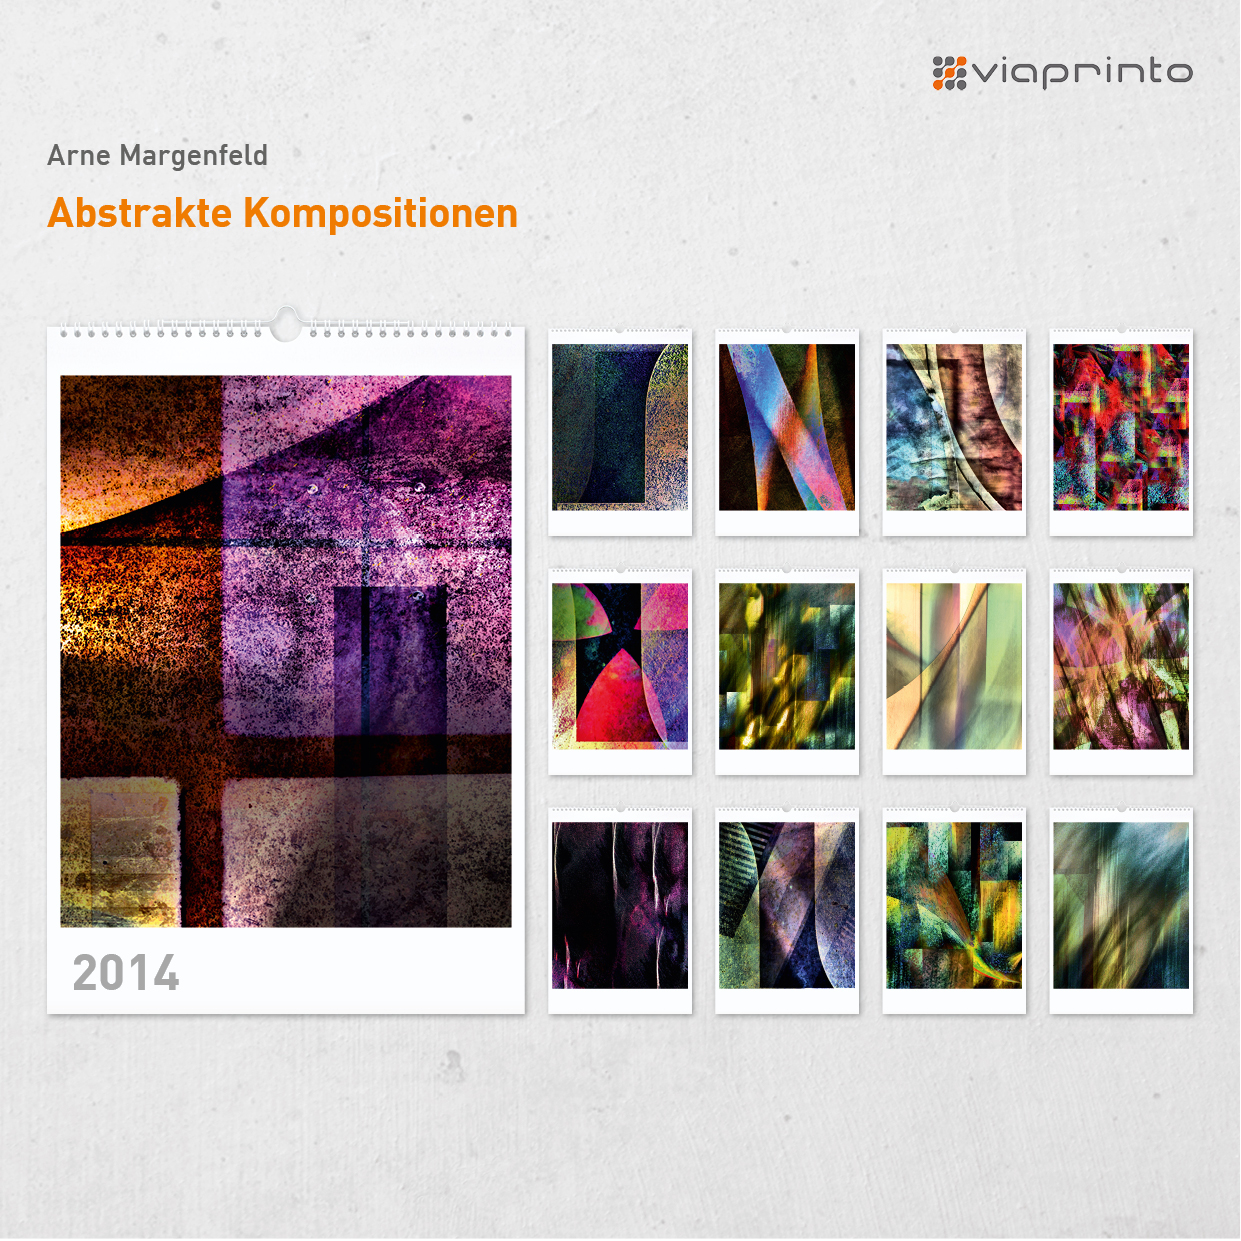 Arne Margenfeld - Motivkalender "Abstrakte Kompositionen"